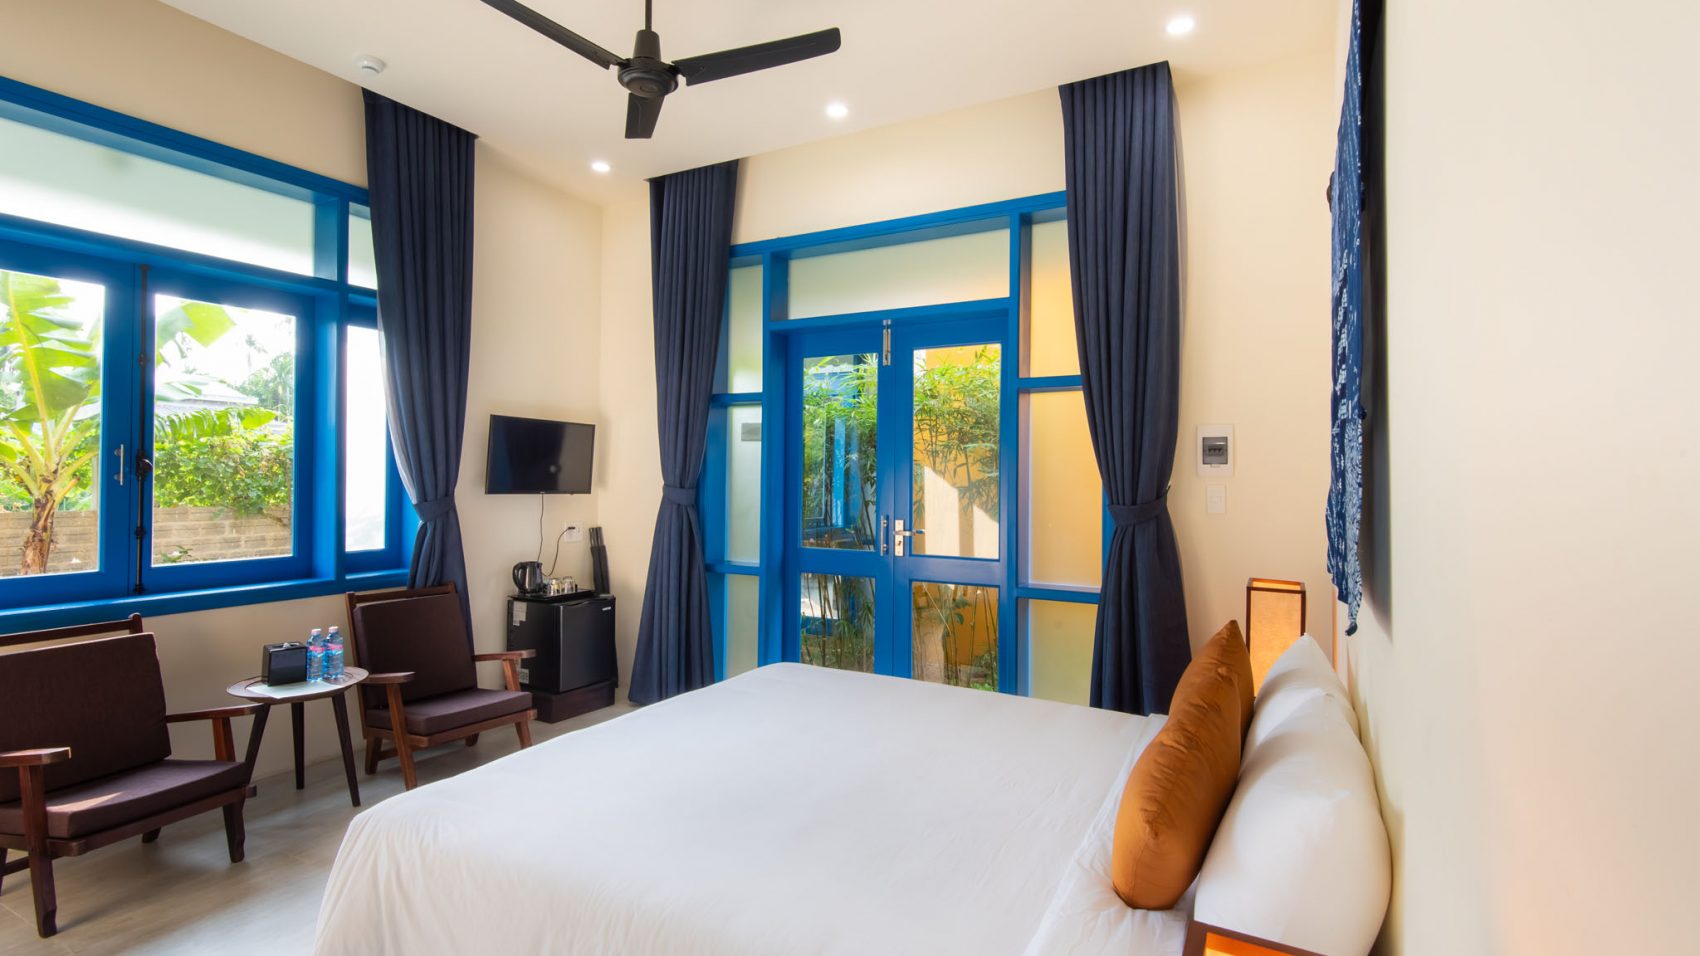 Maison Du Vietnam Resort & Spa: Khu nghỉ dưỡng biển lãng mạn